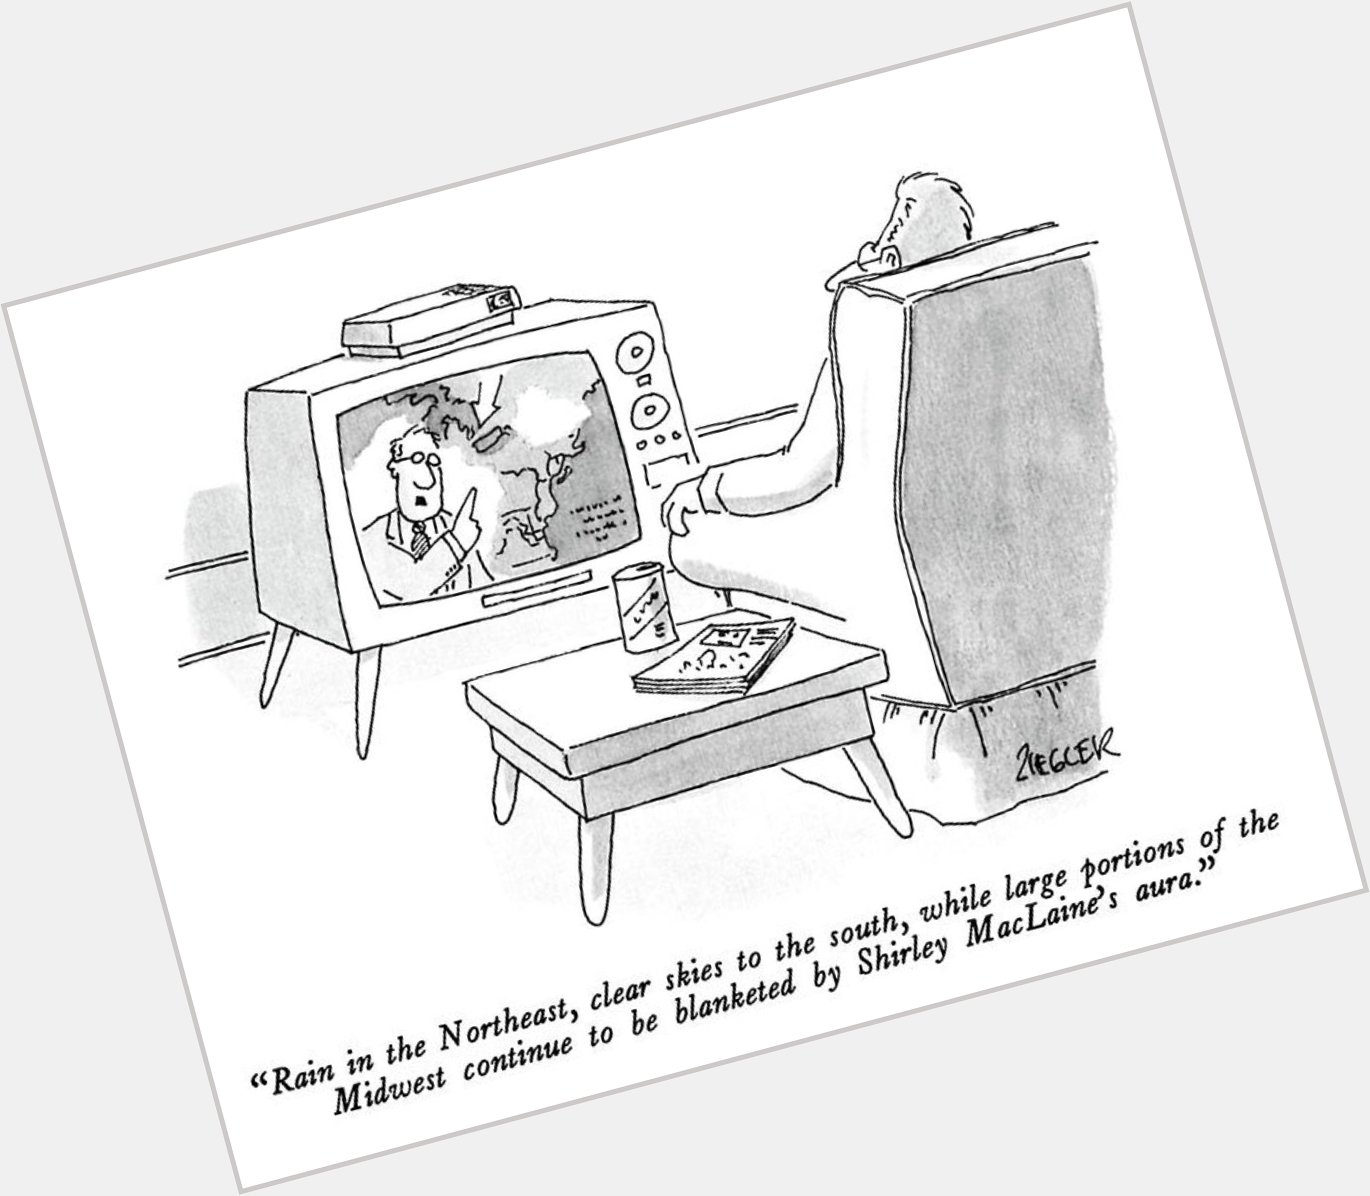 Happy birthday Shirley MacLaine!
A great cartoon by Jack Ziegler, March 30, 1987 